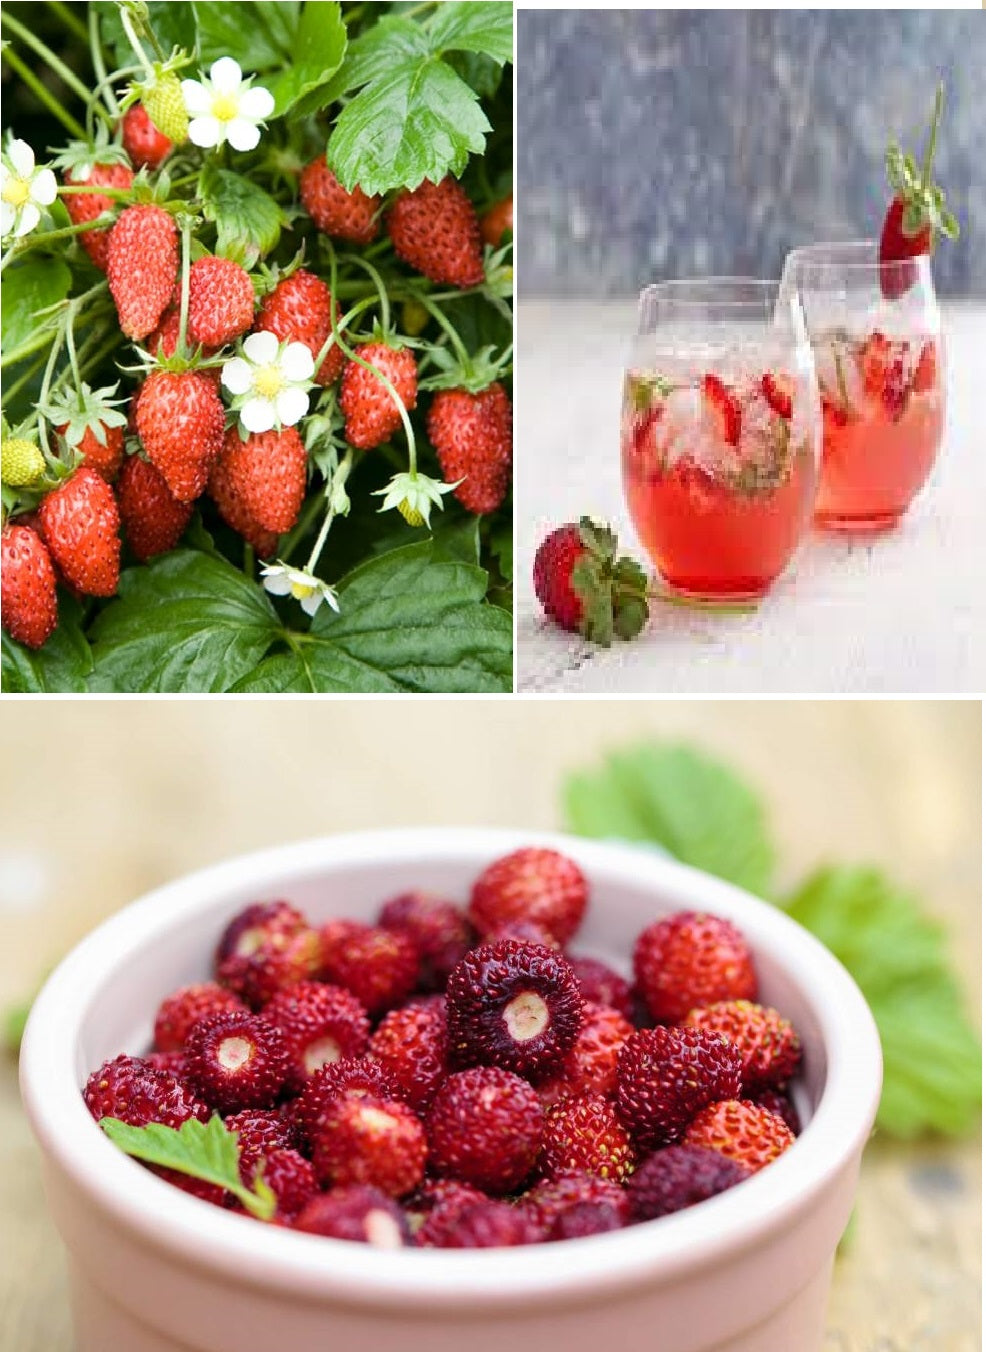 Alpine Strawberry | 100+ seeds | Hardy | Fruit